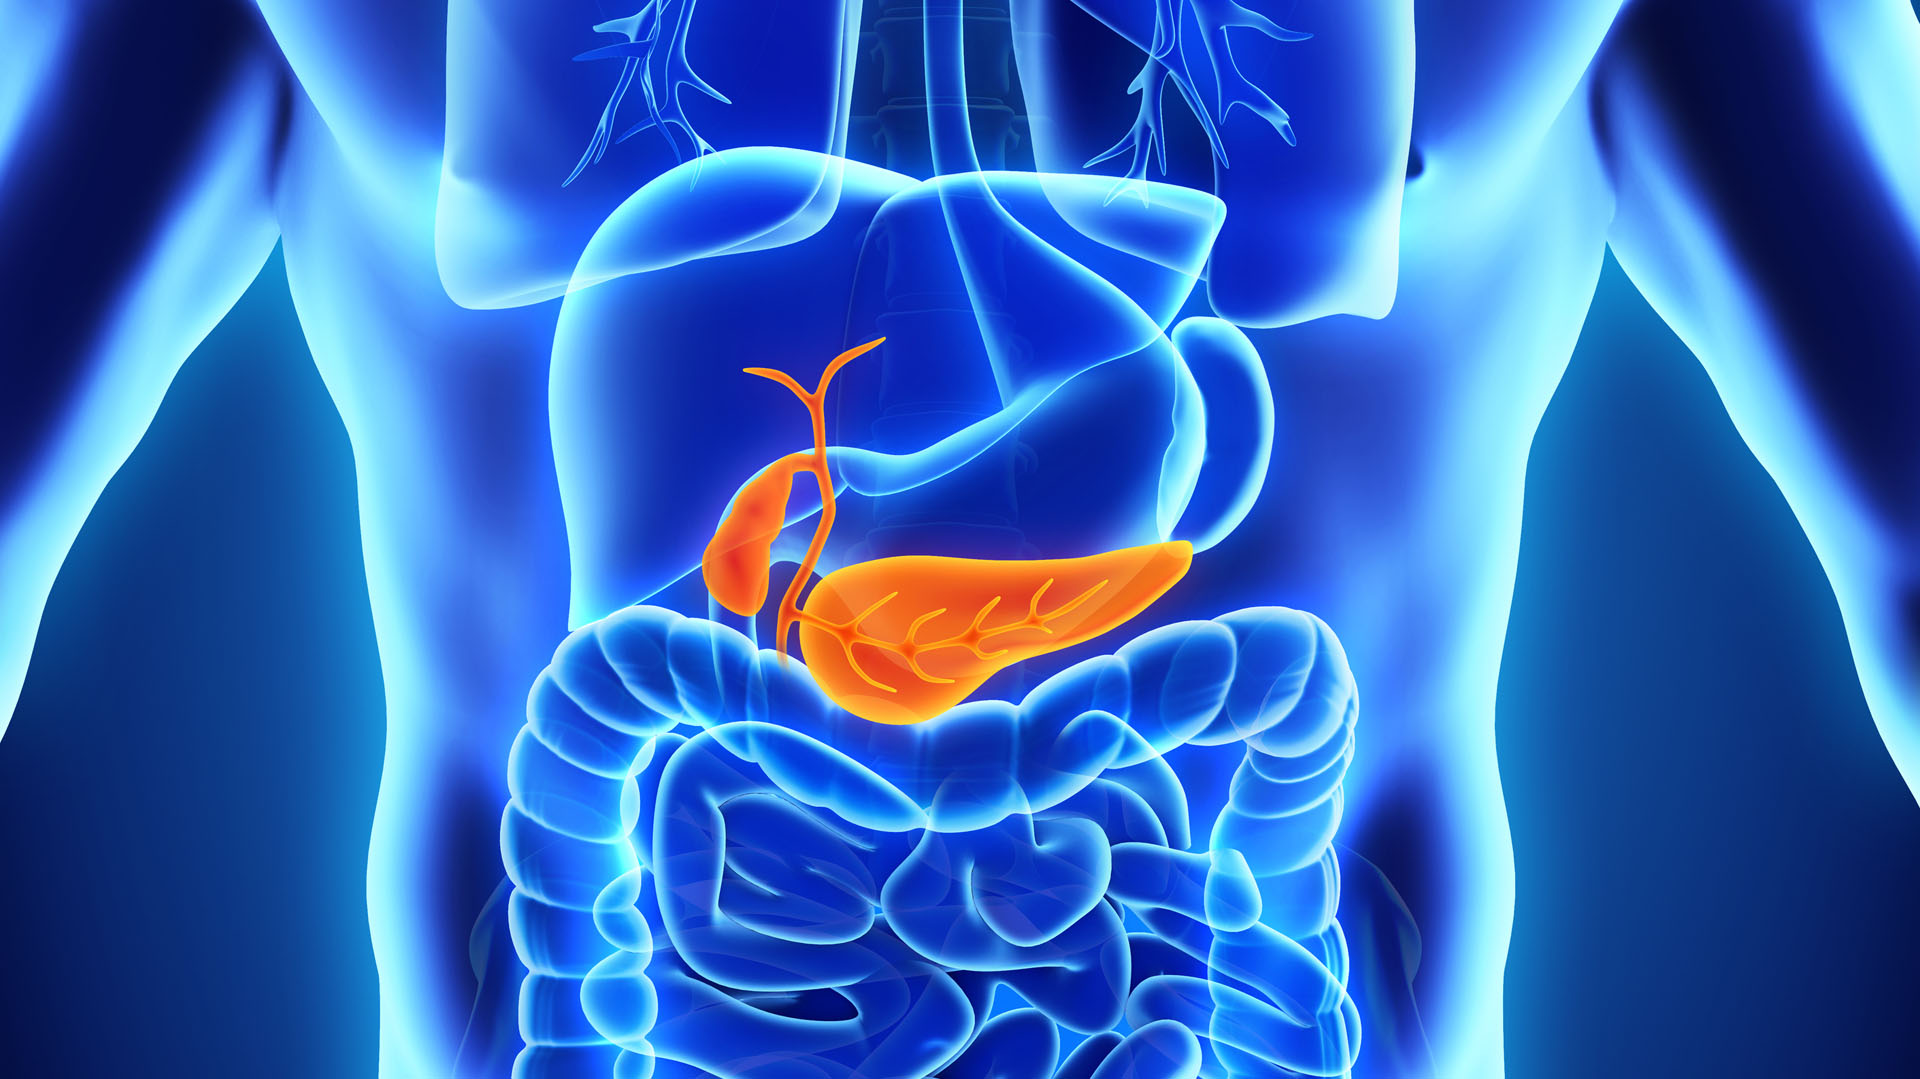 Según los expertos, los signos y síntomas de la pancreatitis pueden variar según el tipo que se experimente
(iStock)